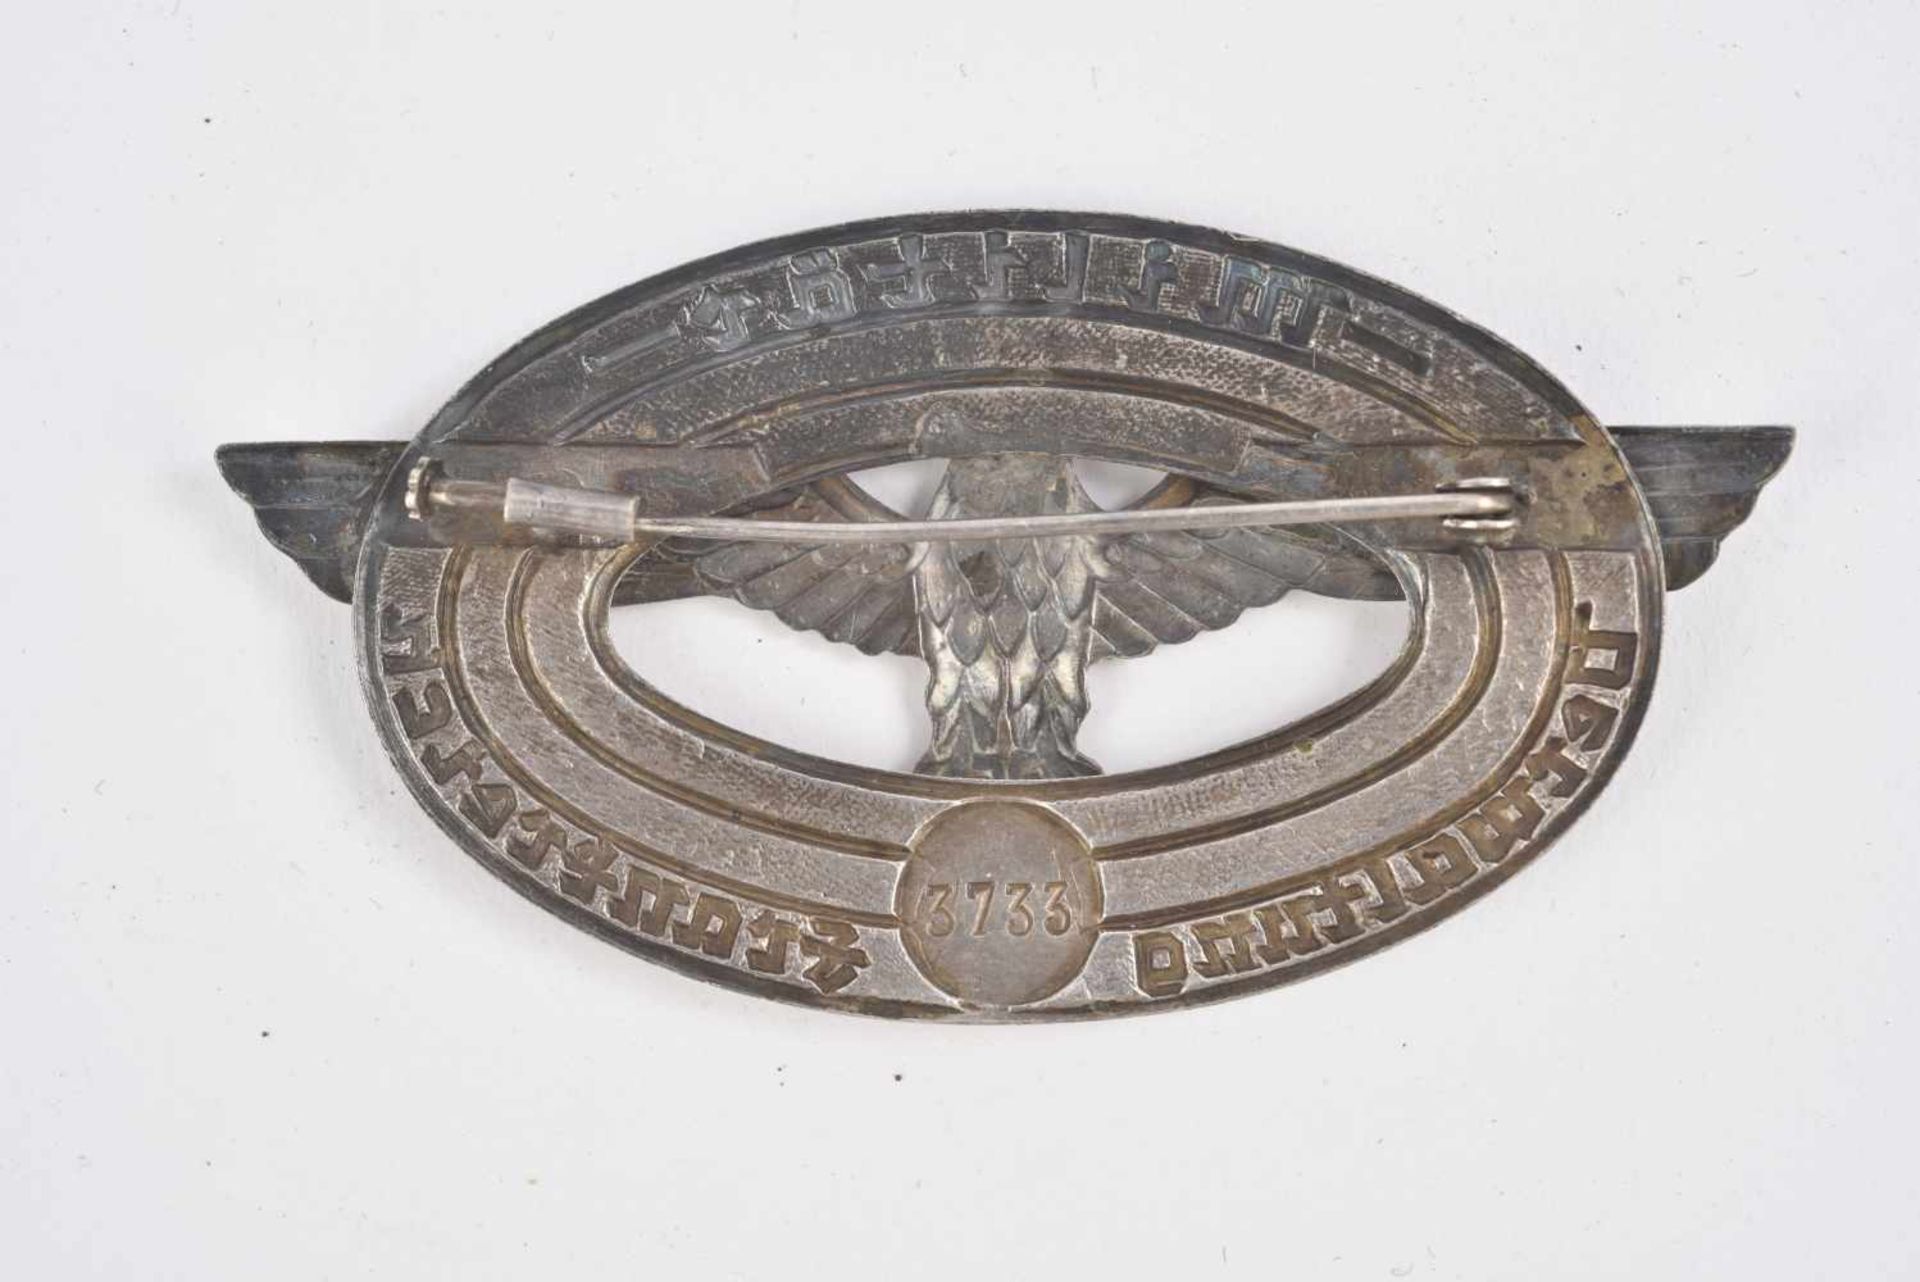 Insigne Verwarltung FrankreichEn métal, centre en émail noir, rouge et blanc. Inscription Militär - Bild 2 aus 2